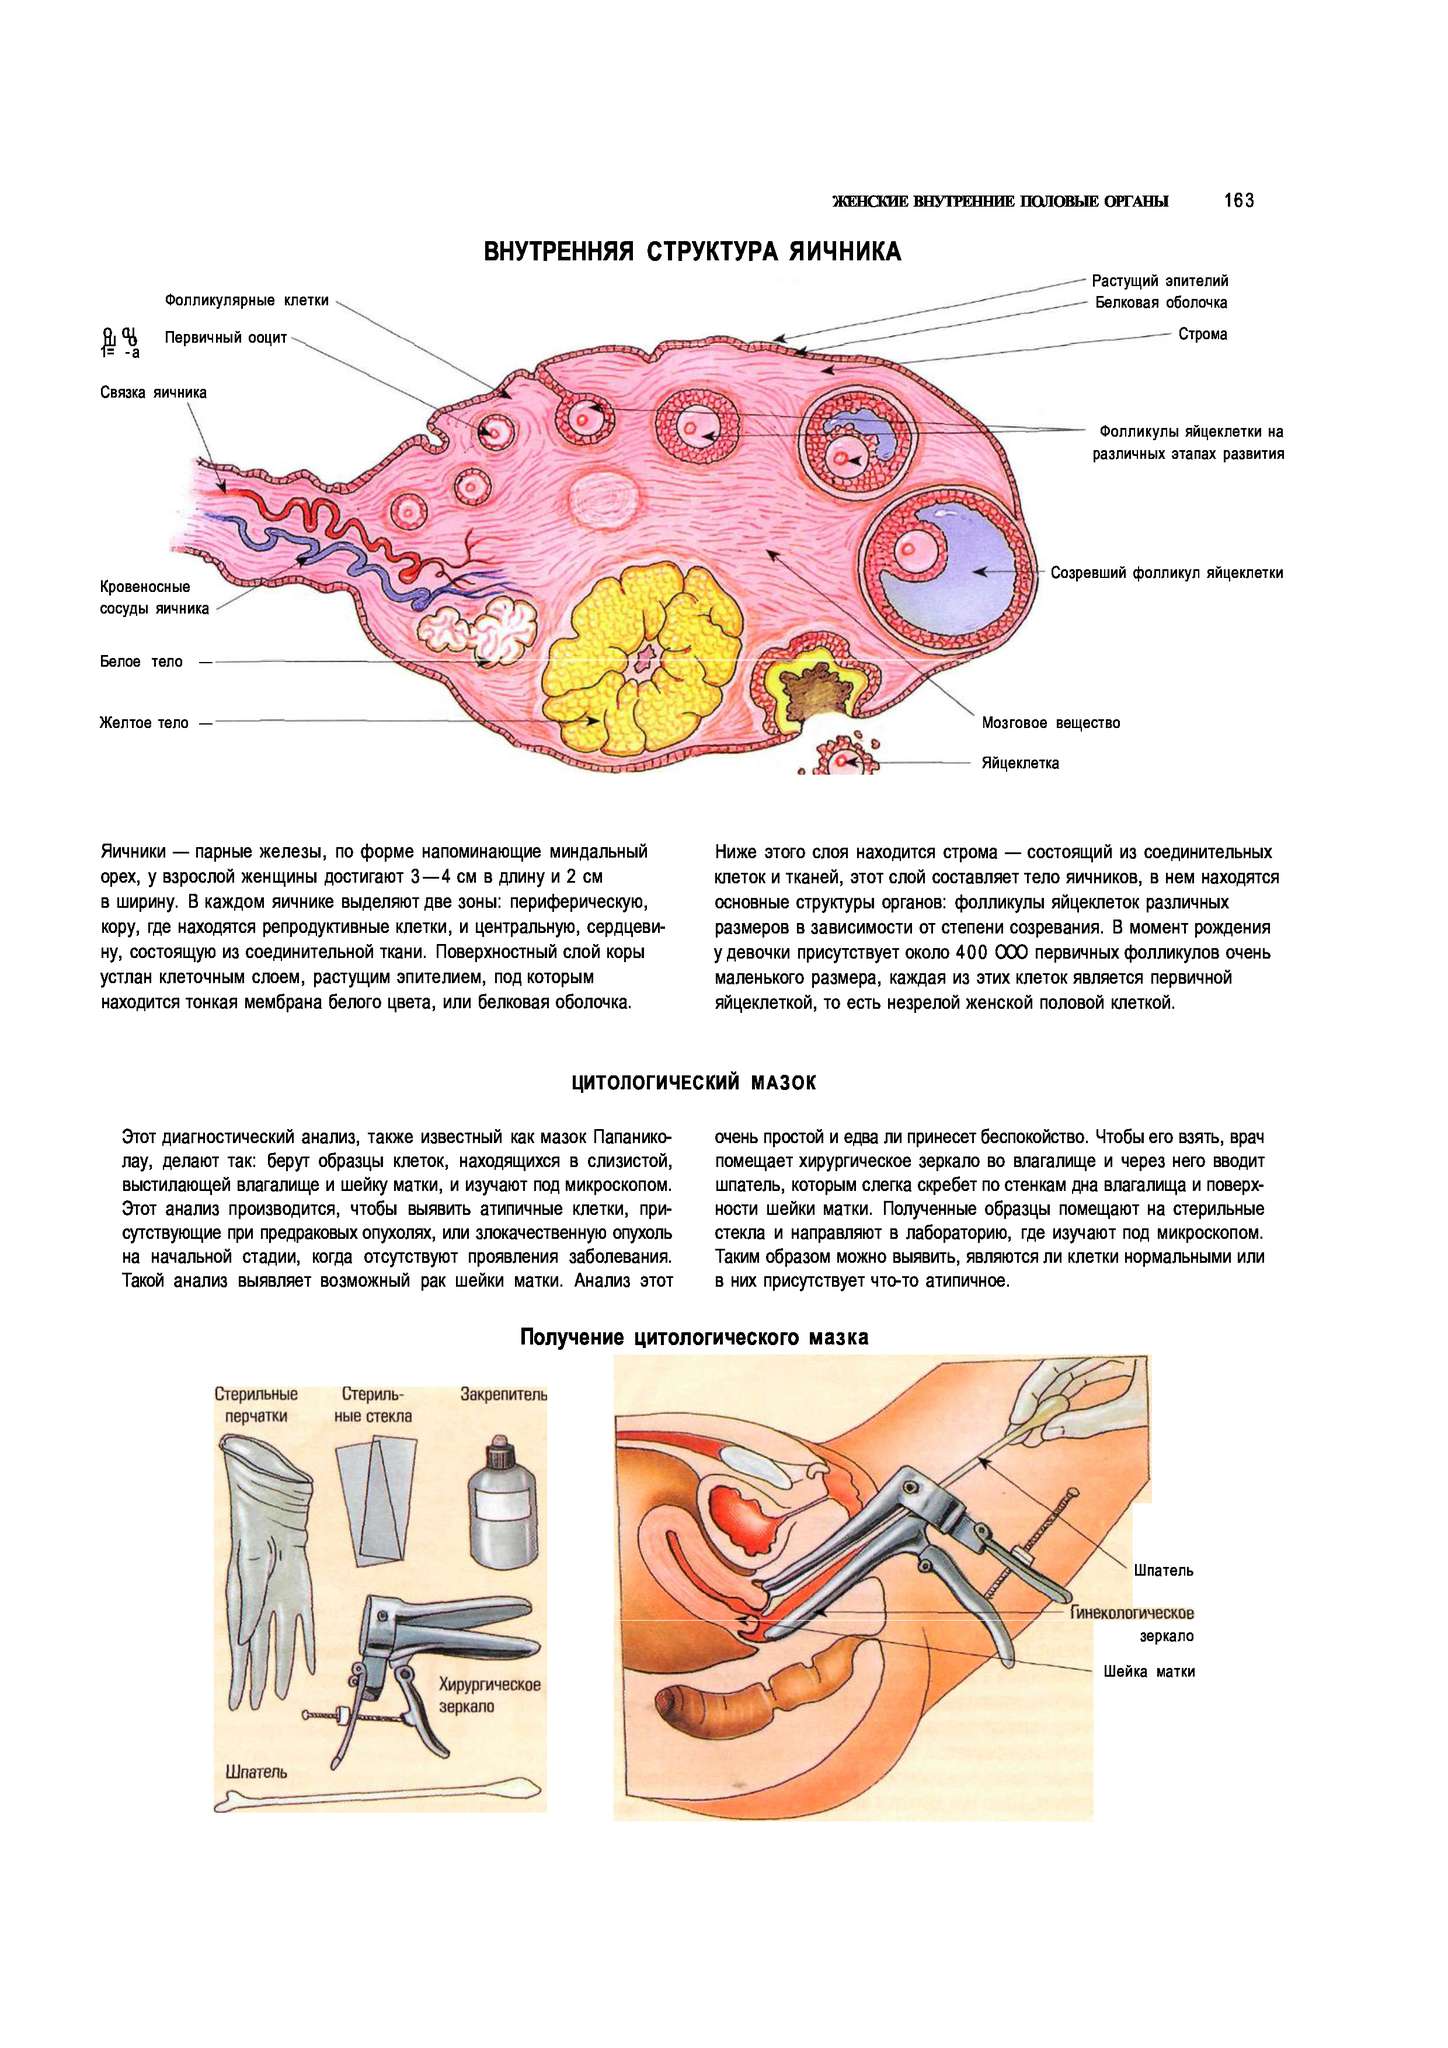 Образование женских половых органов. Яичники расположение строение функции. Женская половая система яичник анатомия строение. Внутреннее строение яичника анатомия. Женские половые органы анатомия яичник.